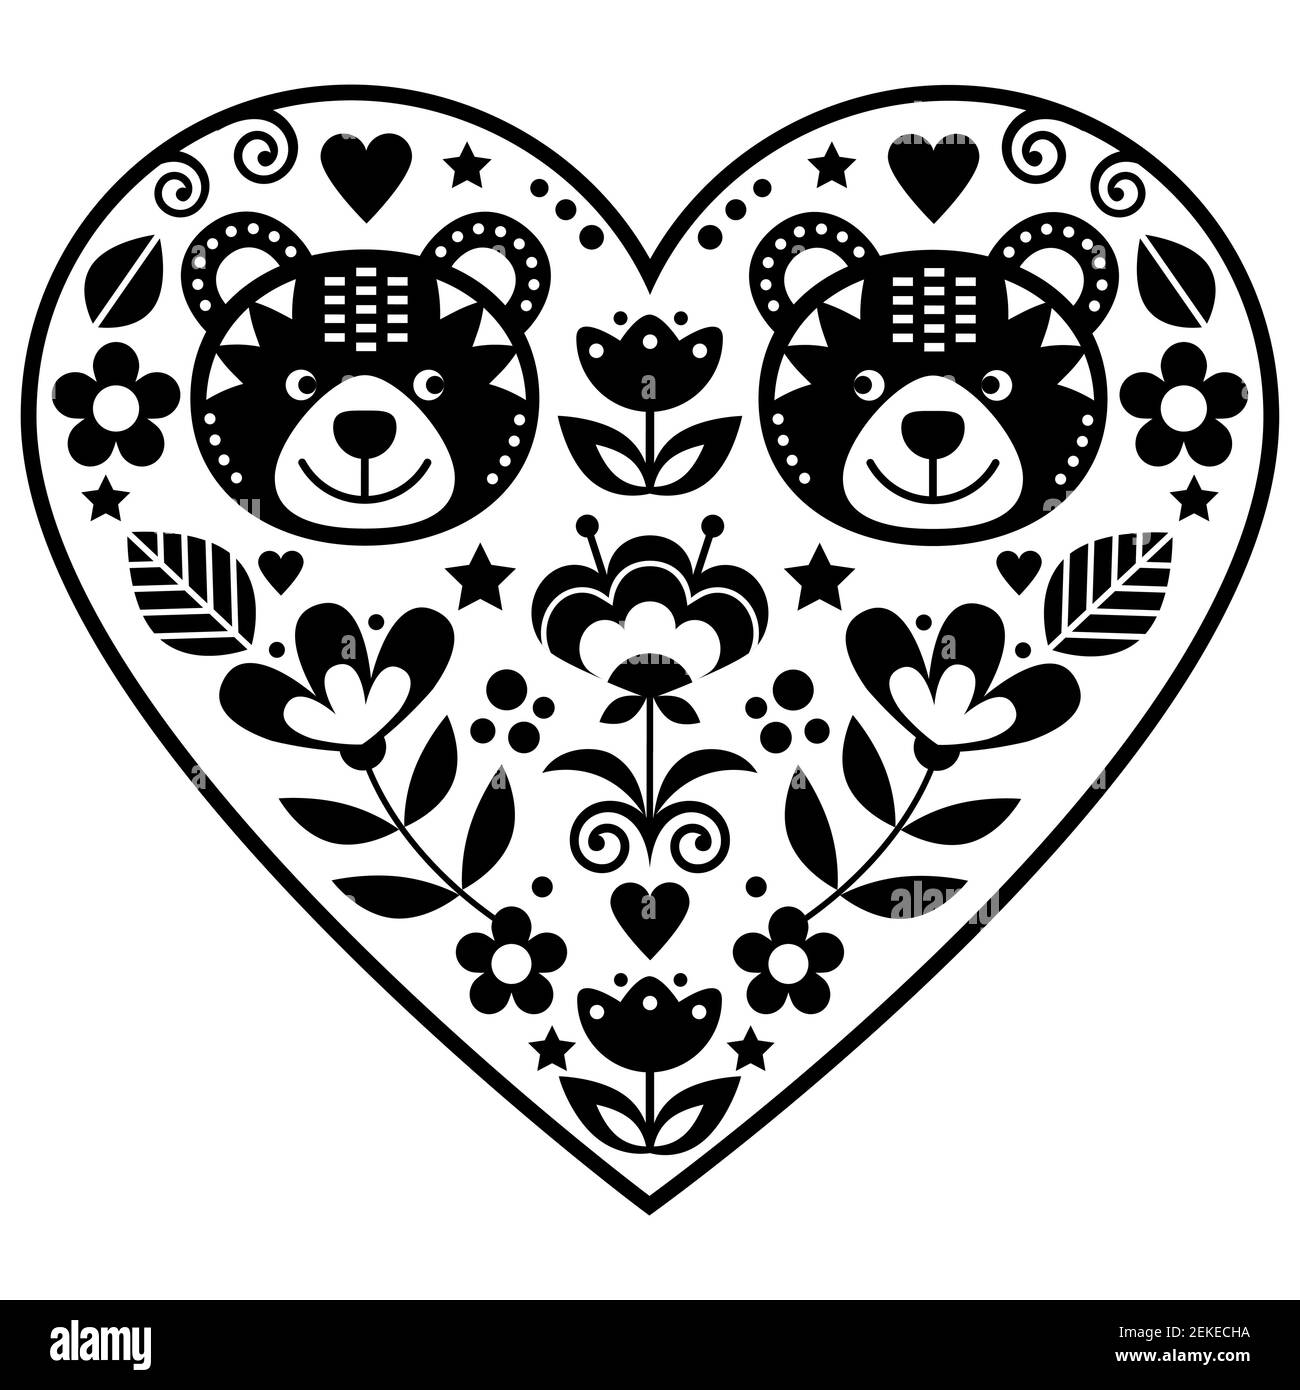 Skandinavisches Herz mit zwei Bären in der Liebe und Blumen Volkskunst Vektor-Design, schwarz und weiß Valentinstag Blumen Grußkarte oder Hochzeit invitati Stock Vektor